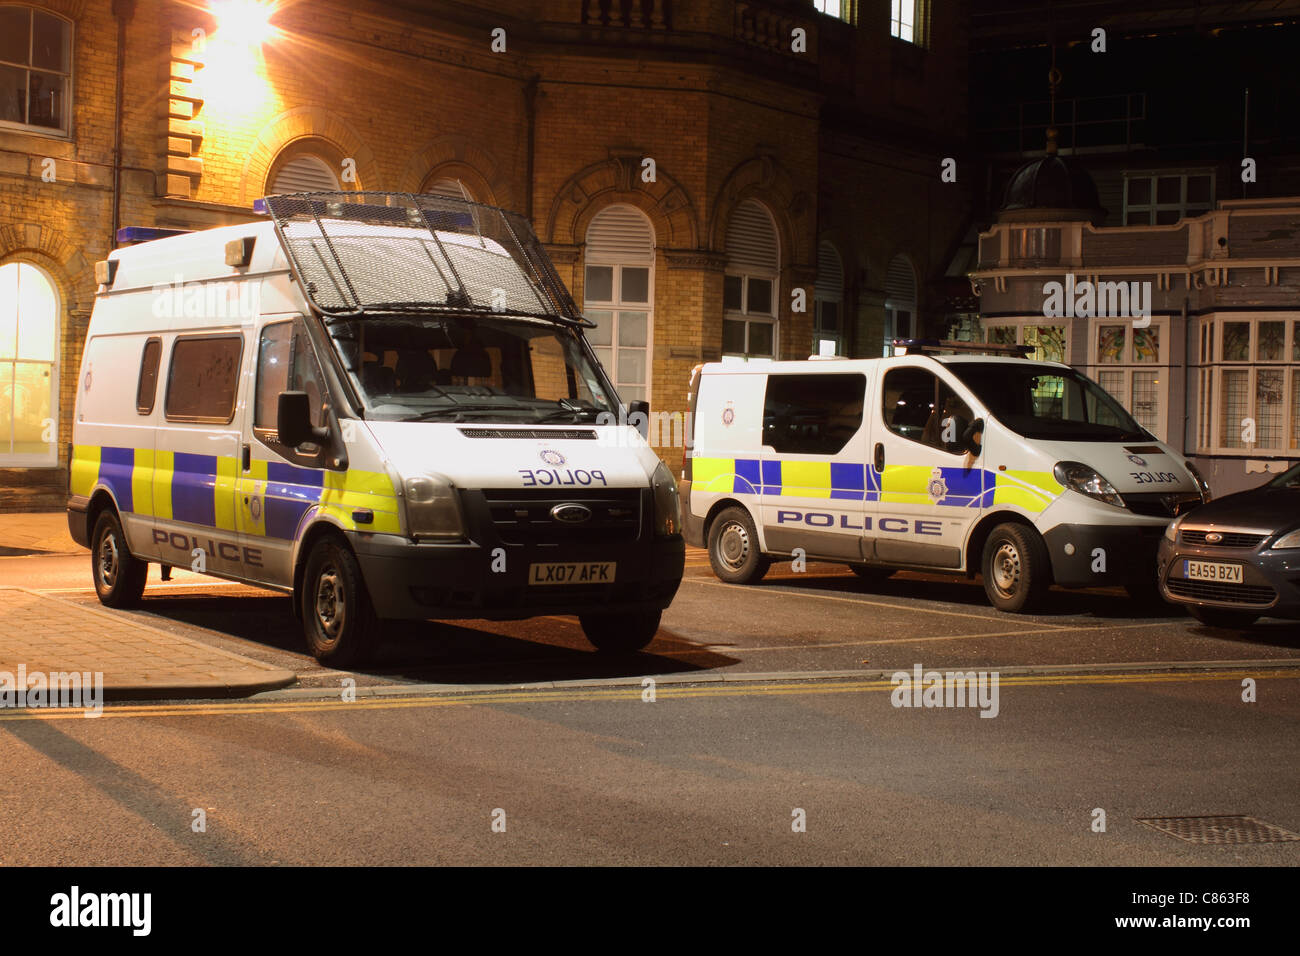 Voiture de police uk riot van avec grillage de protection de pare-brise Banque D'Images